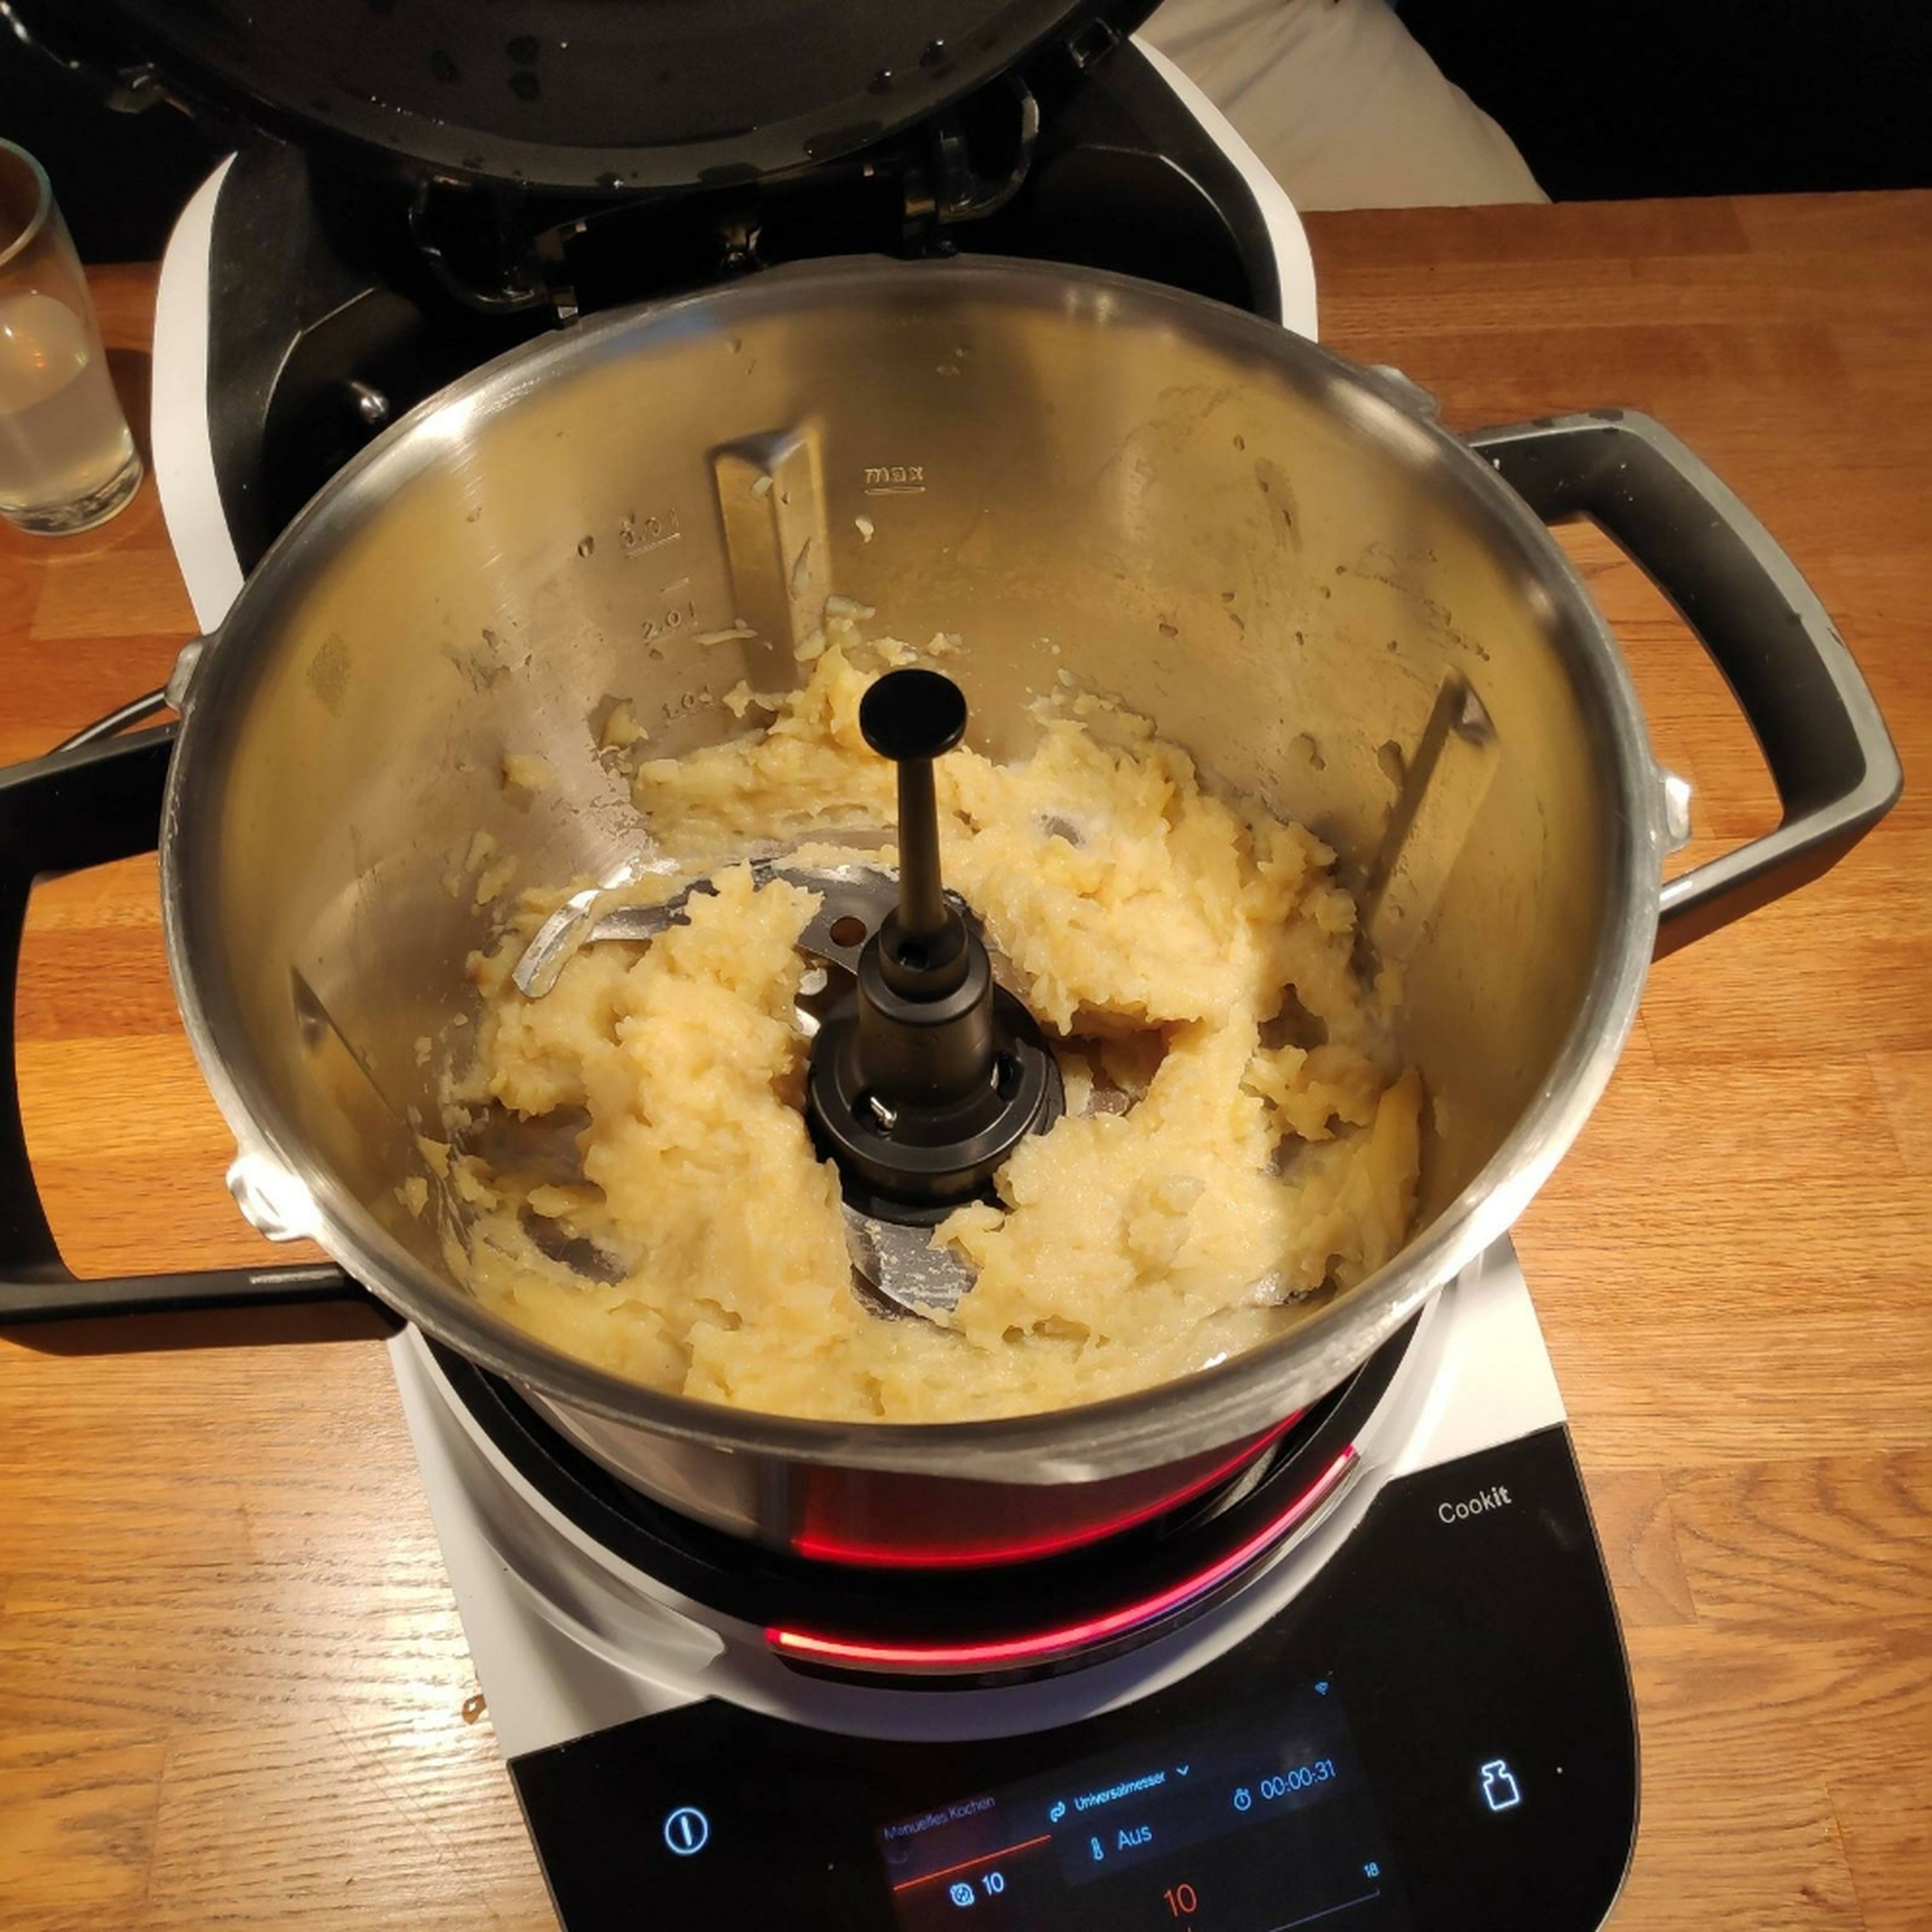 Universalmesser wieder einsetzen. Die Kartoffeln schälen und mit ausreichend Wasser im Kartoffelkochprogramm des Cookits weich kochen. Anschließend das Wasser abgießen. Nun die gekochten Kartoffeln im manuellen Kochmodus mit dem Universalmesser bei Stufe 10 für ca. 15 Sekunden bei geschlossenem Deckel mit Messbecher zerkleinern, sodass noch Stücke der Kartoffel erhalten bleiben (kein Püree) (Universalmesser | Stufe 10 | 15 Sek.).
Universalmesser entnehmen und die zerkleinerten Kartoffeln mit Hilfe des Küchenspatels in eine Schüssel umfüllen.